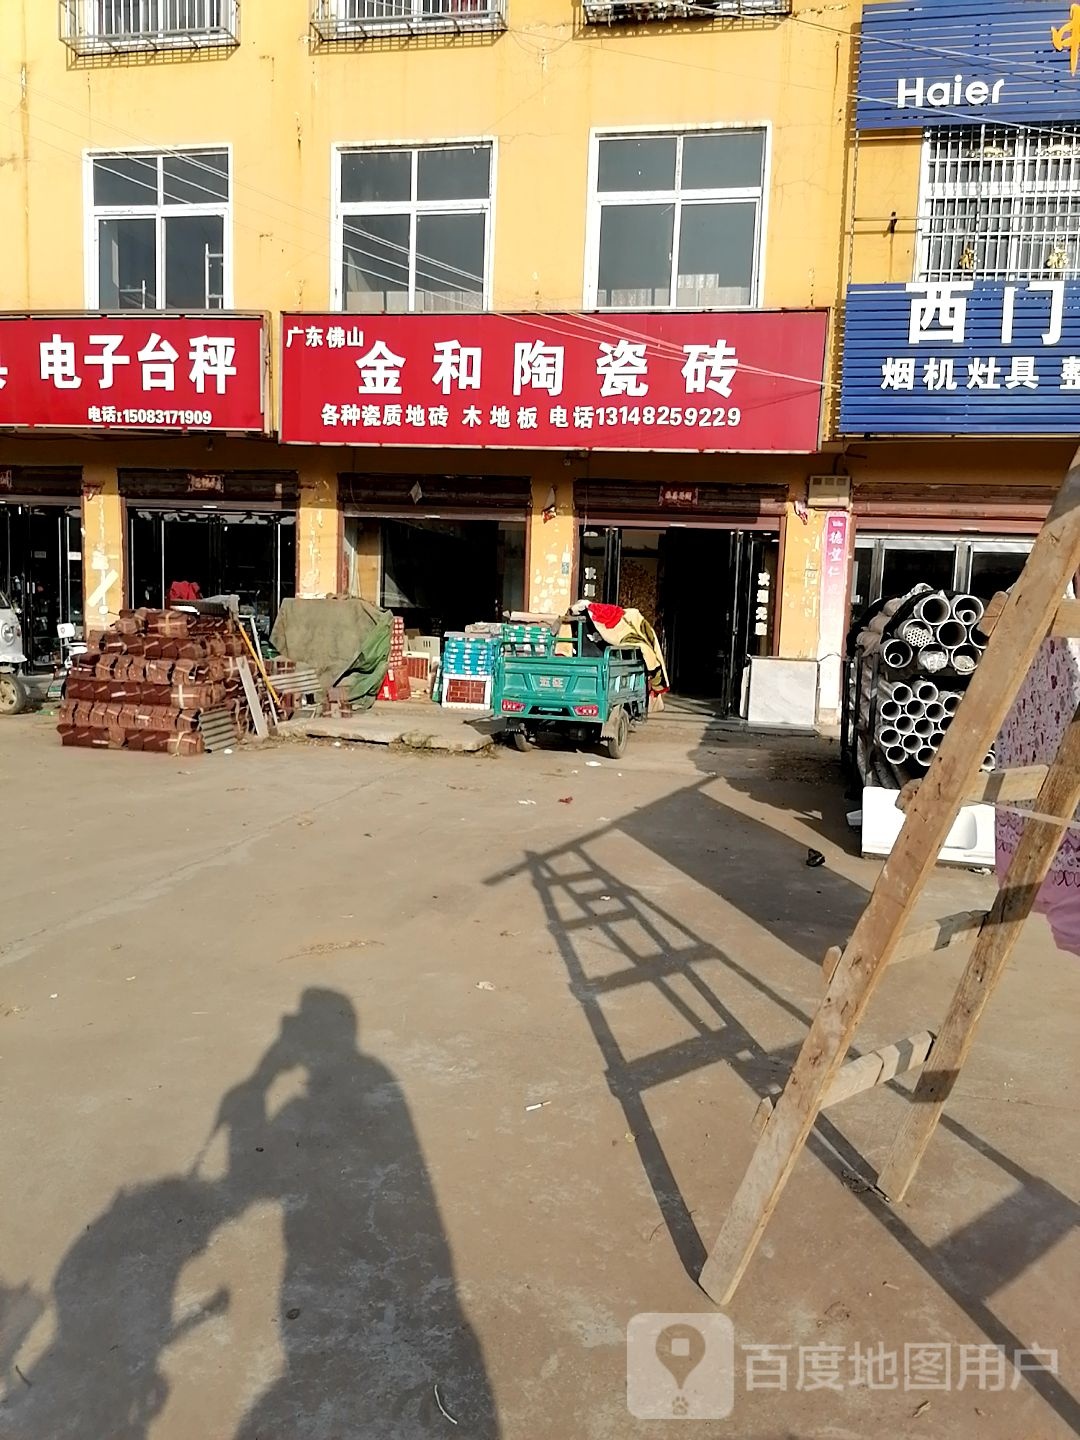 商水县固墙镇金和陶瓷砖(兰罗线店)